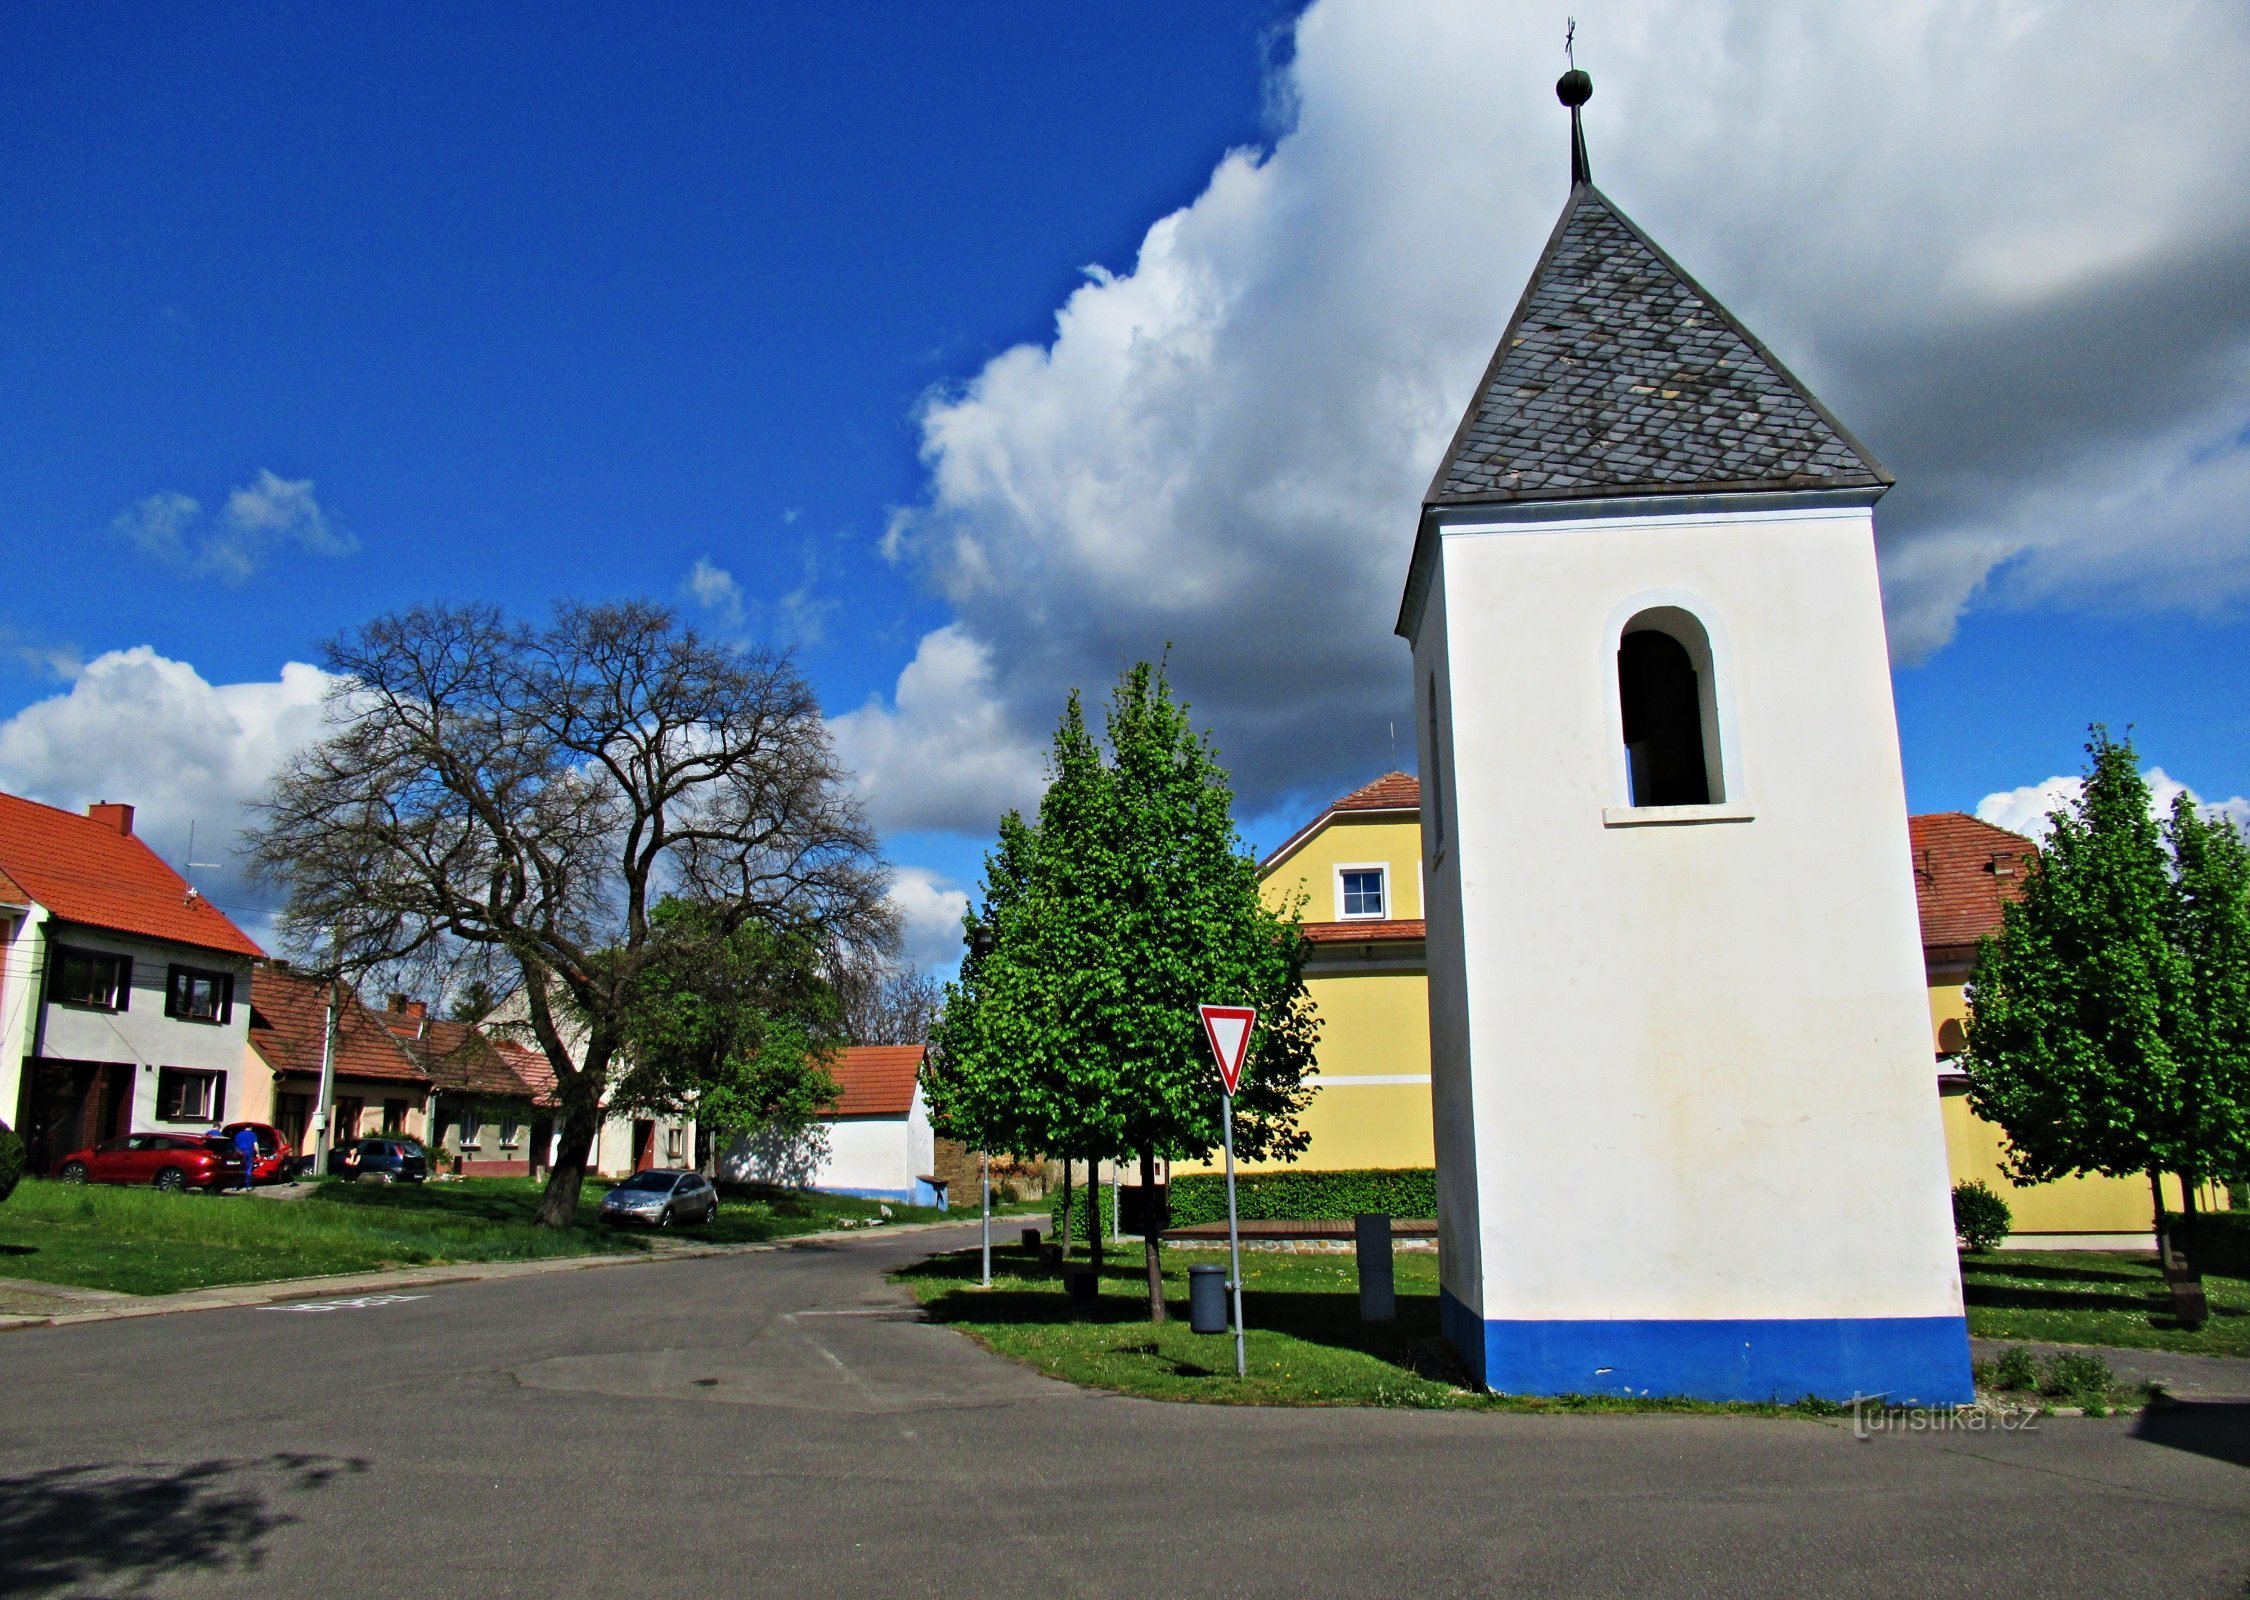 鐘楼のある村の中心